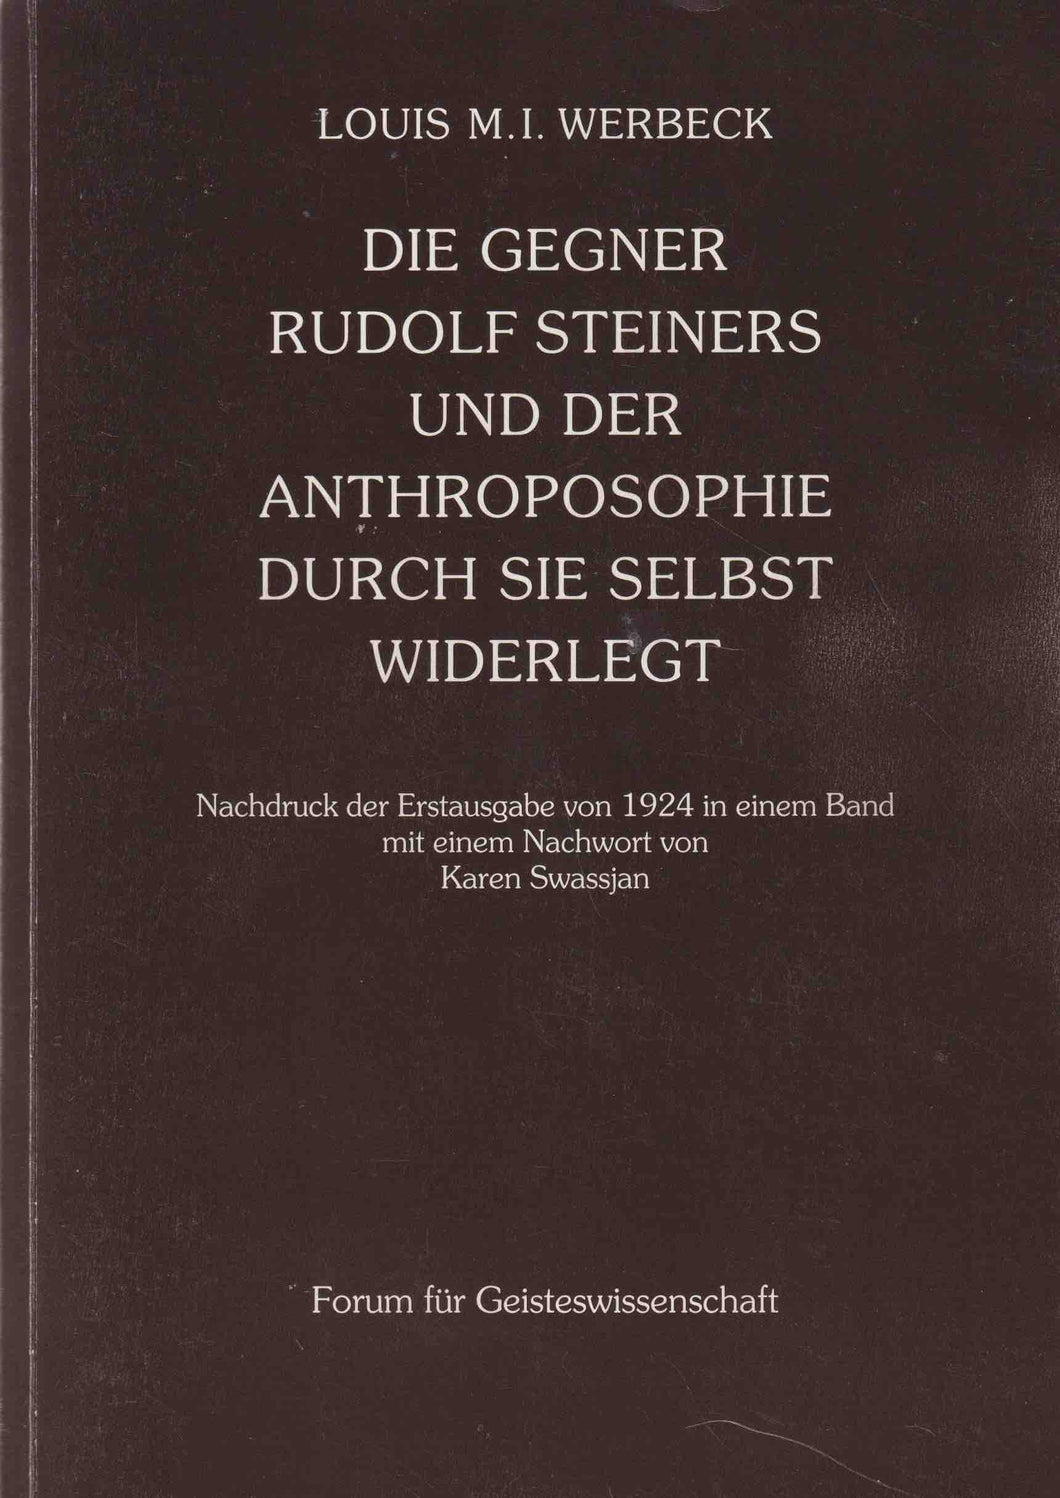 Die Gegner Rudolf Steiners und der Anthroposophie durch sie selbst widerlegt